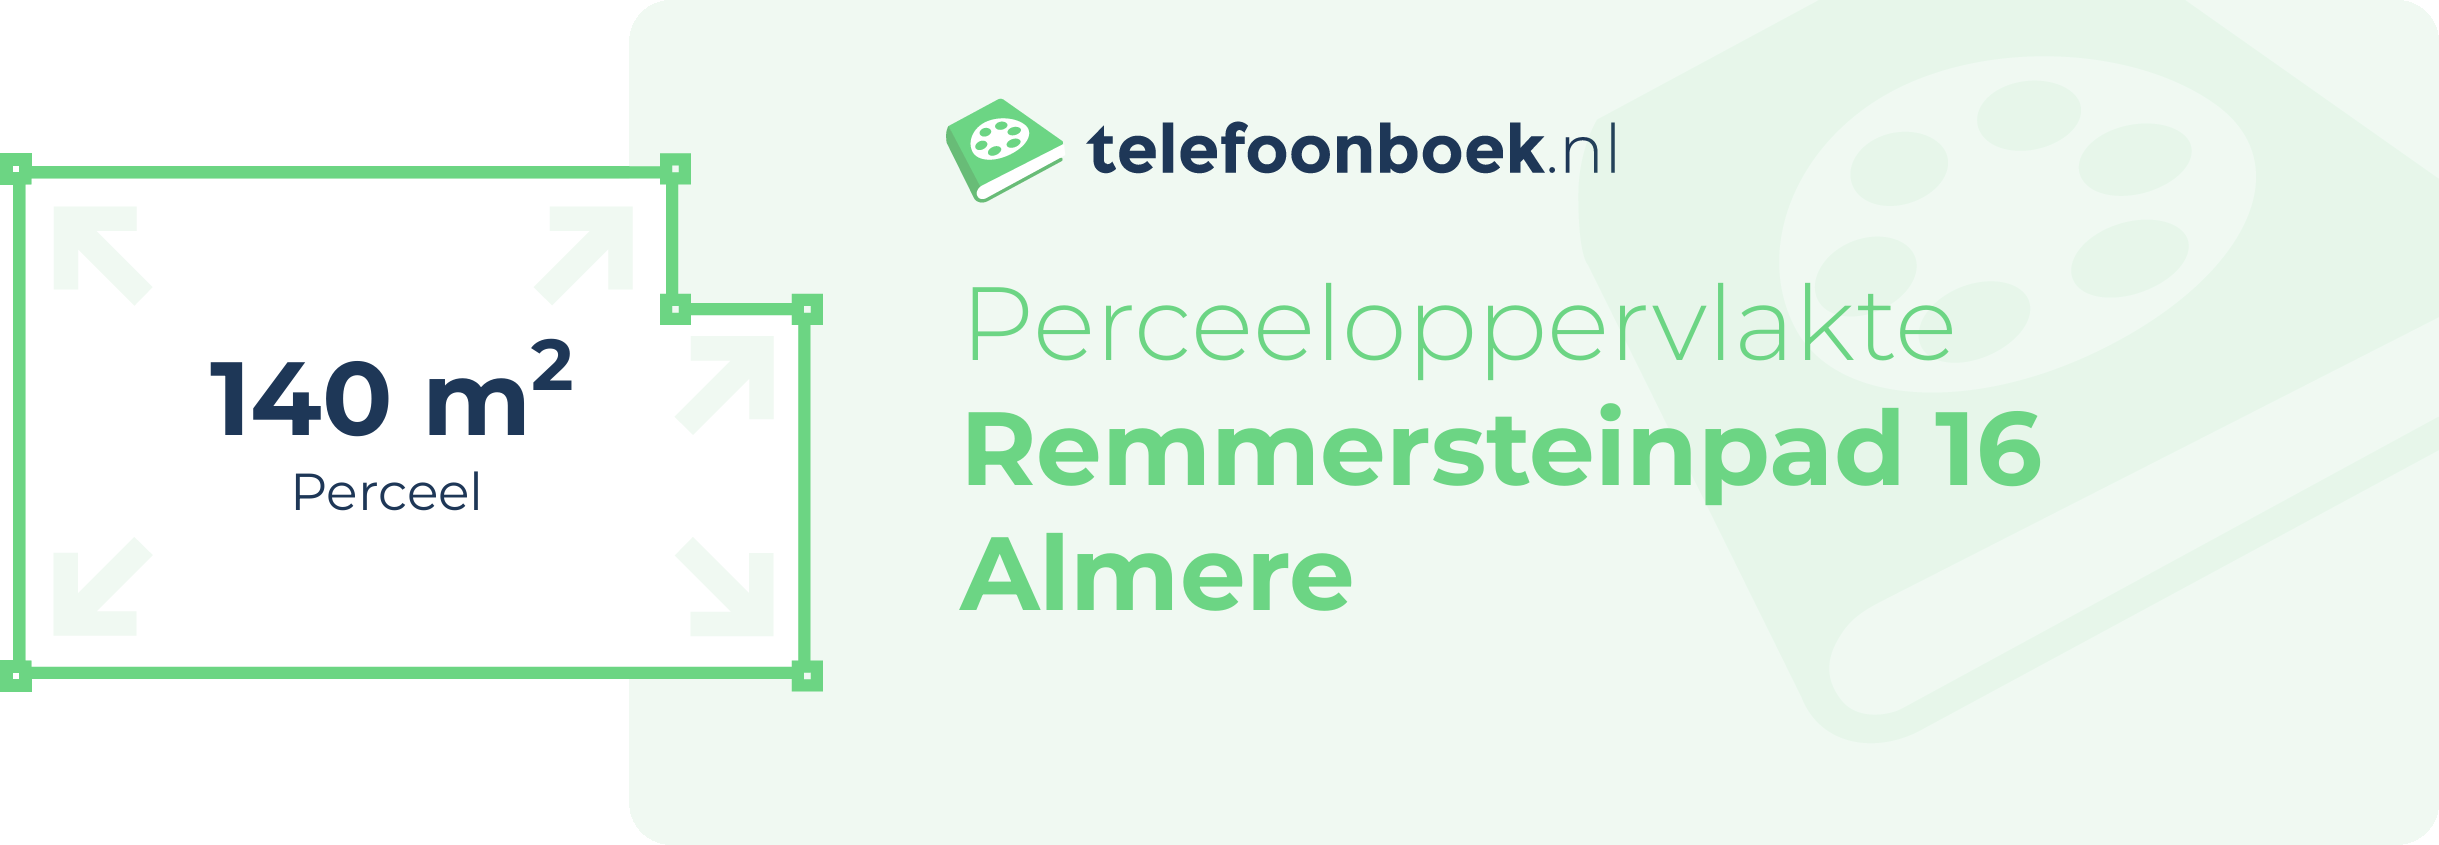 Perceeloppervlakte Remmersteinpad 16 Almere